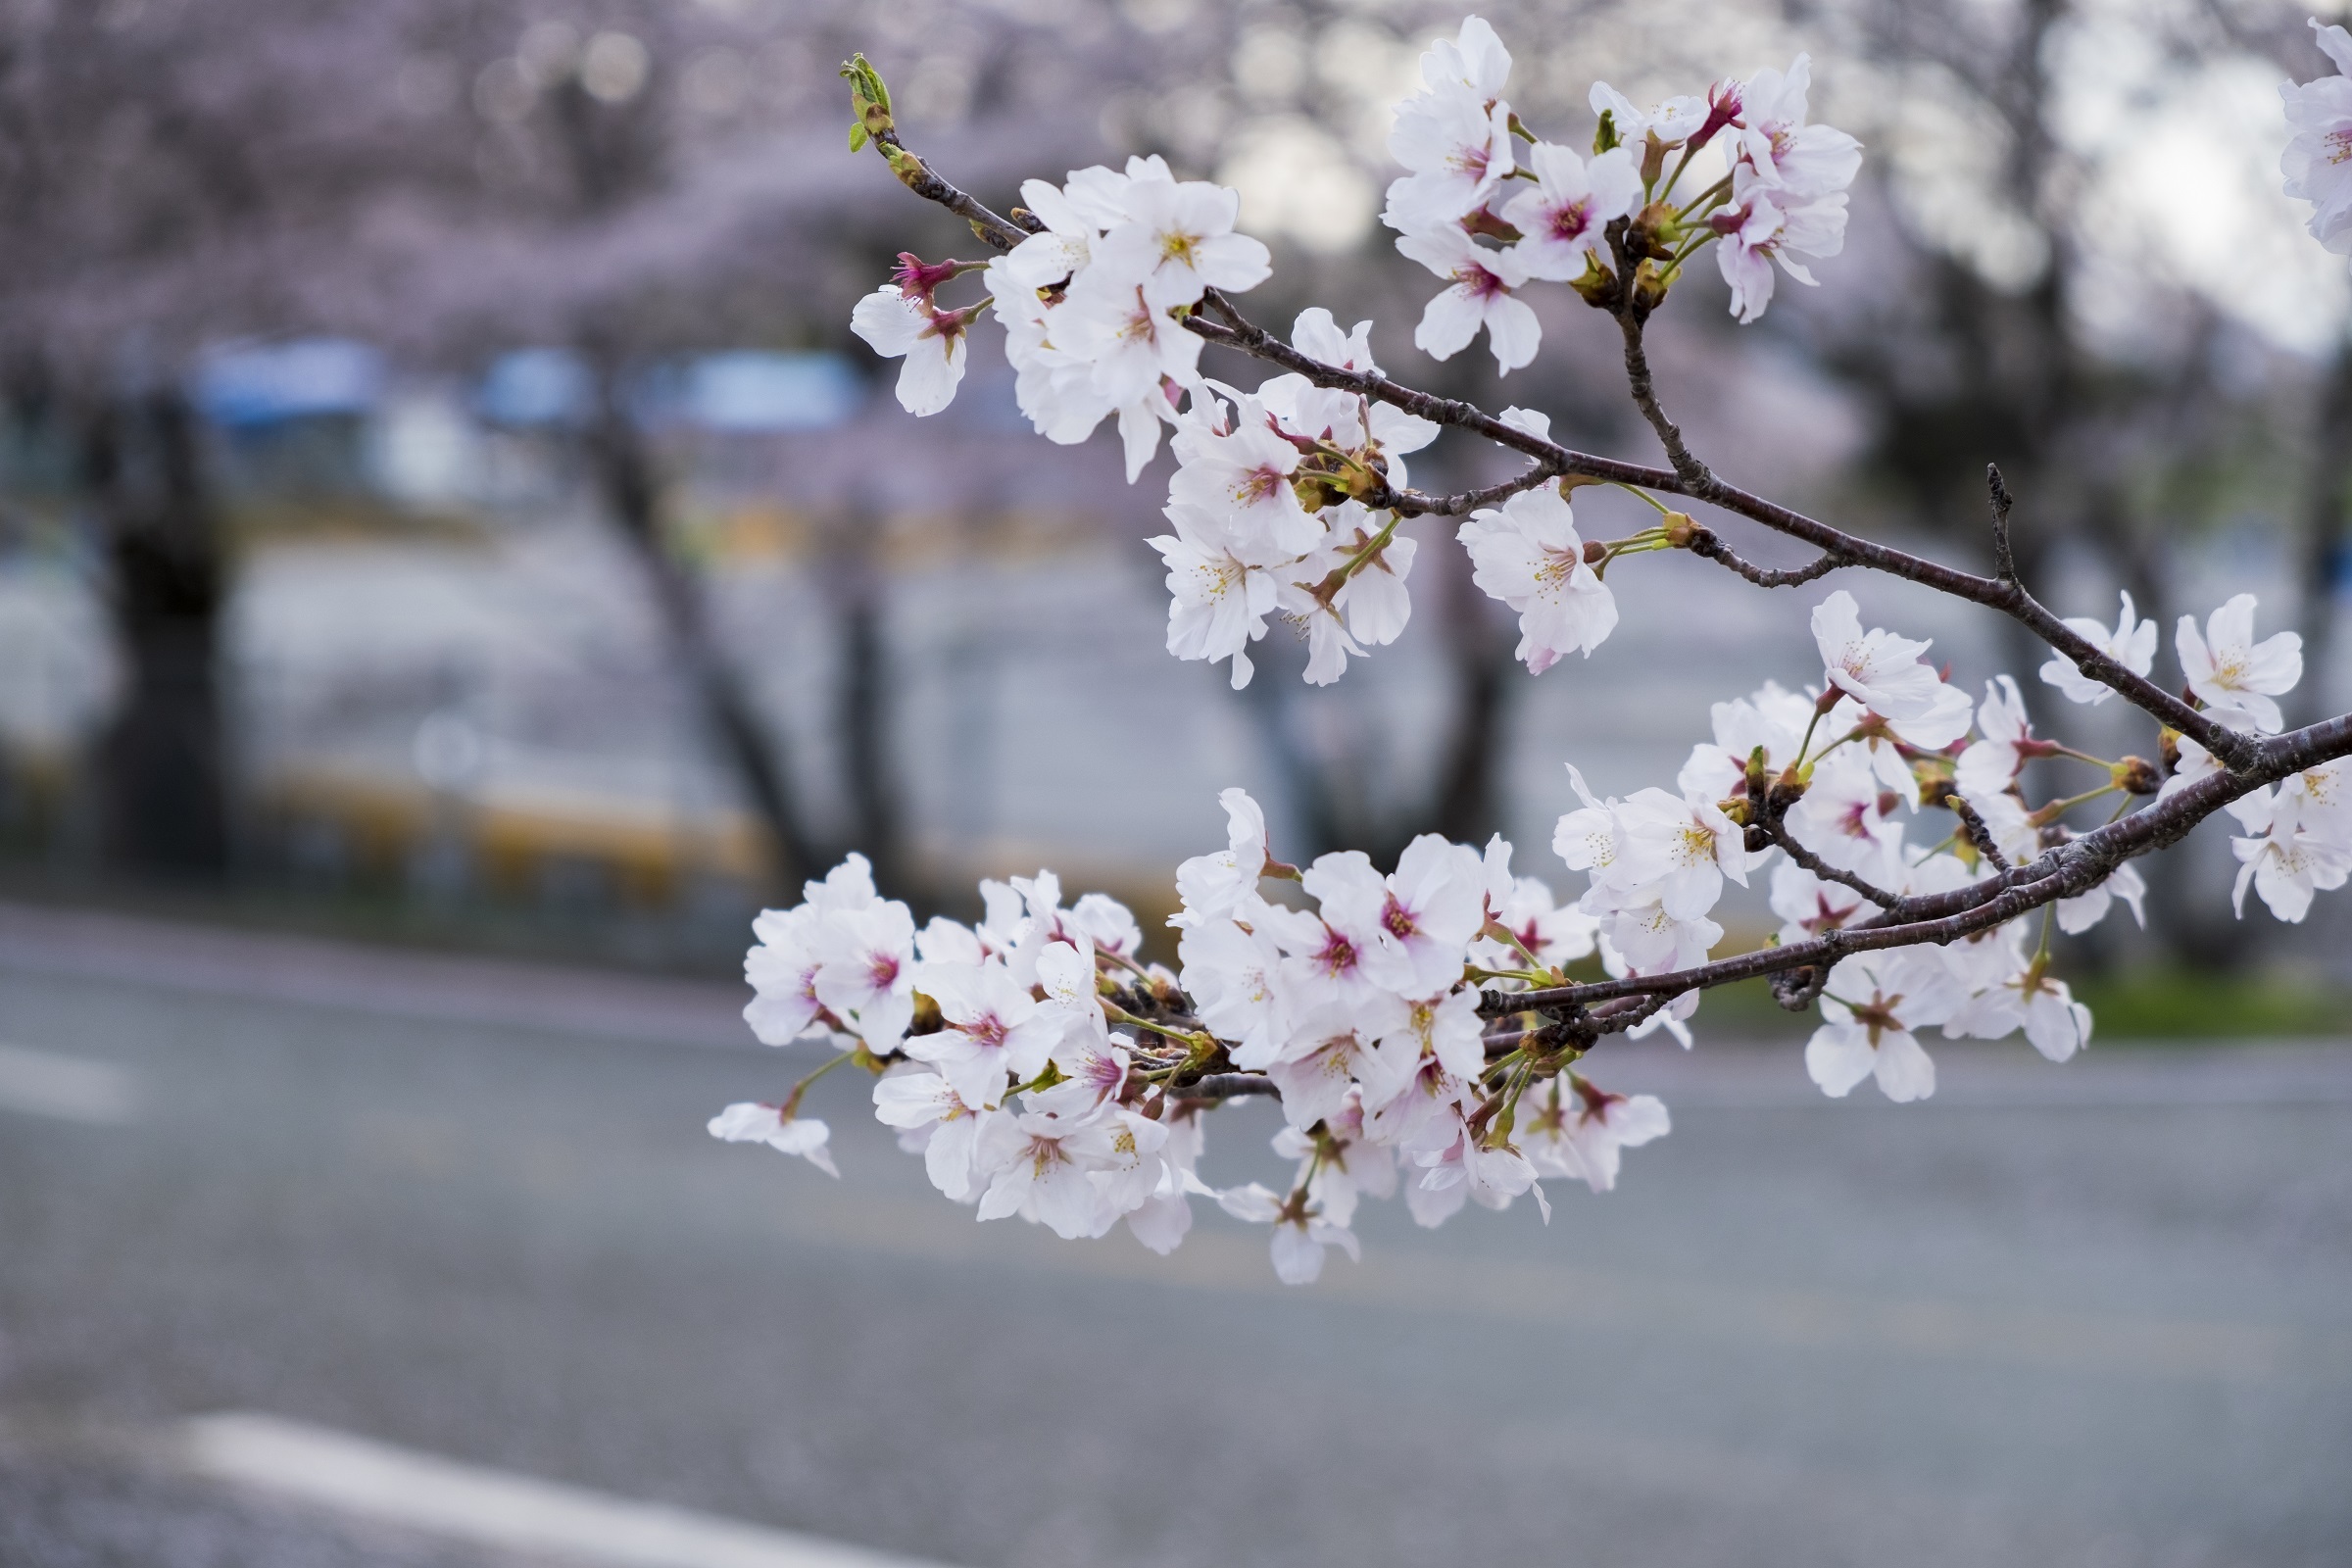 Địa điểm giải trí mua-hoa-anh-dao-nhat-ban-qua-ong-kinh-nguoi-viet Mùa hoa anh đào Nhật Bản qua ống kính người Việt Du lịch  